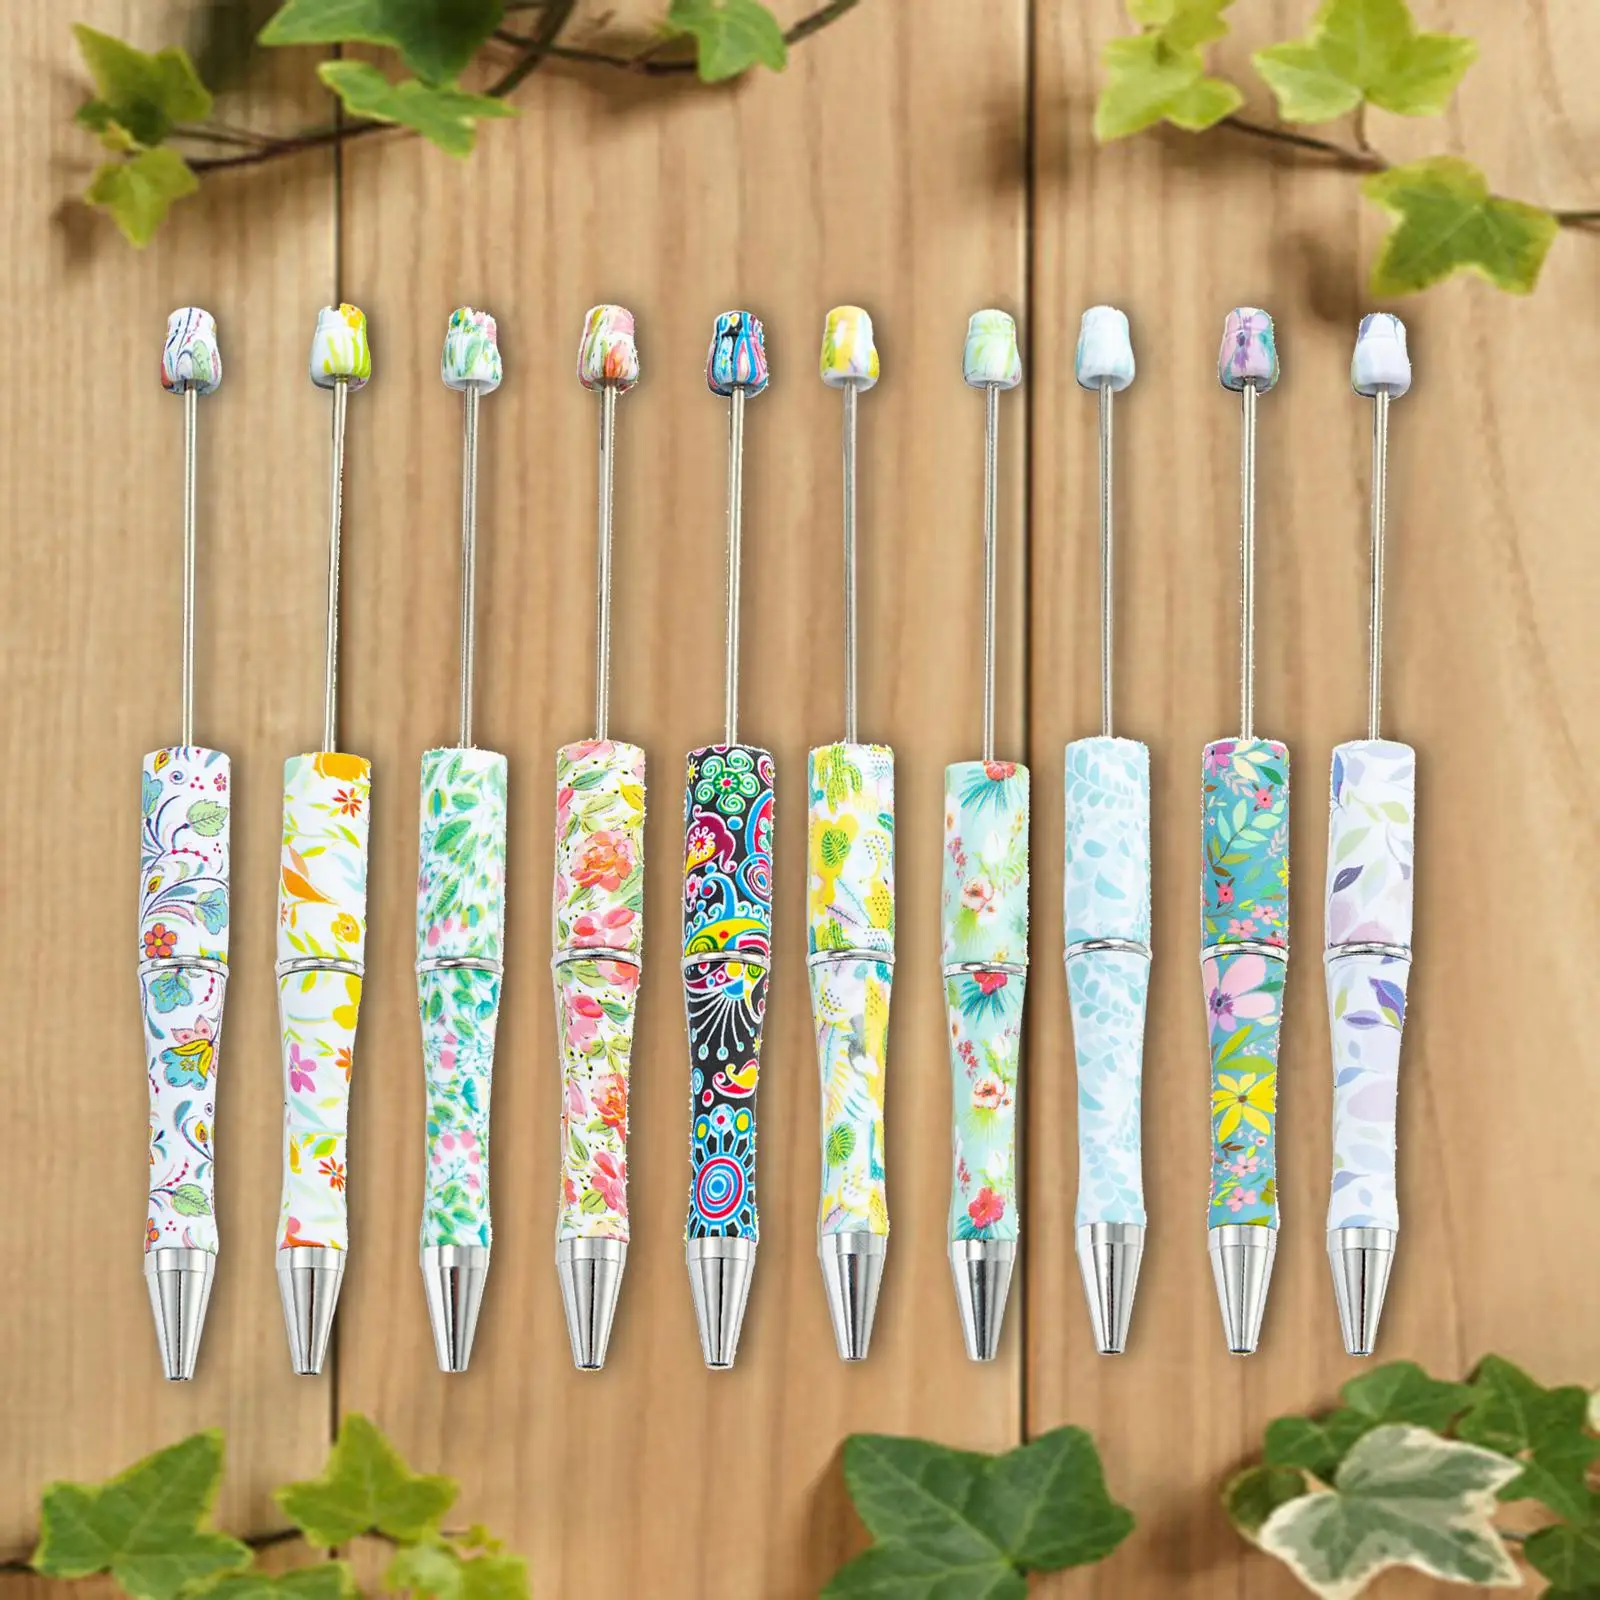 10x Beadable Pens DIY Multicolor Printable Ballpoint Pen Bead Pen Beaded Ballpoint Pens for Draw Journaling Office Exam School